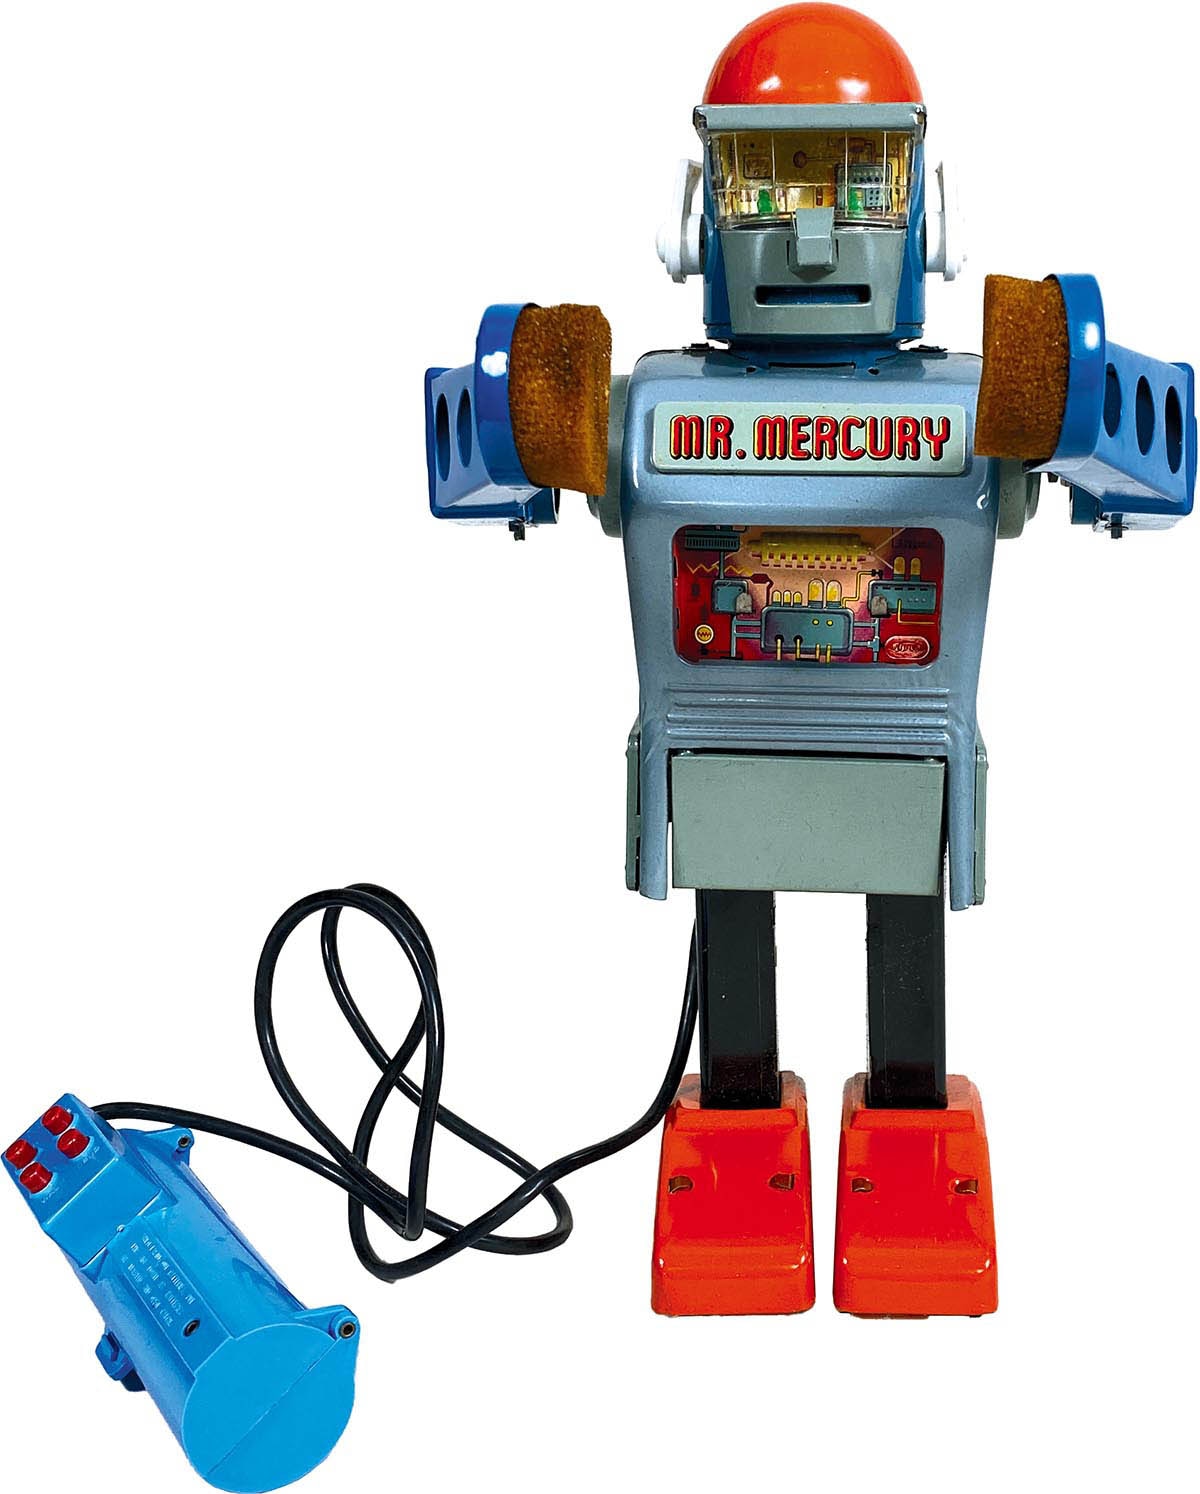 メタルハウス ロボットシリーズ マシンガンロボット 実働 動作確認動画 